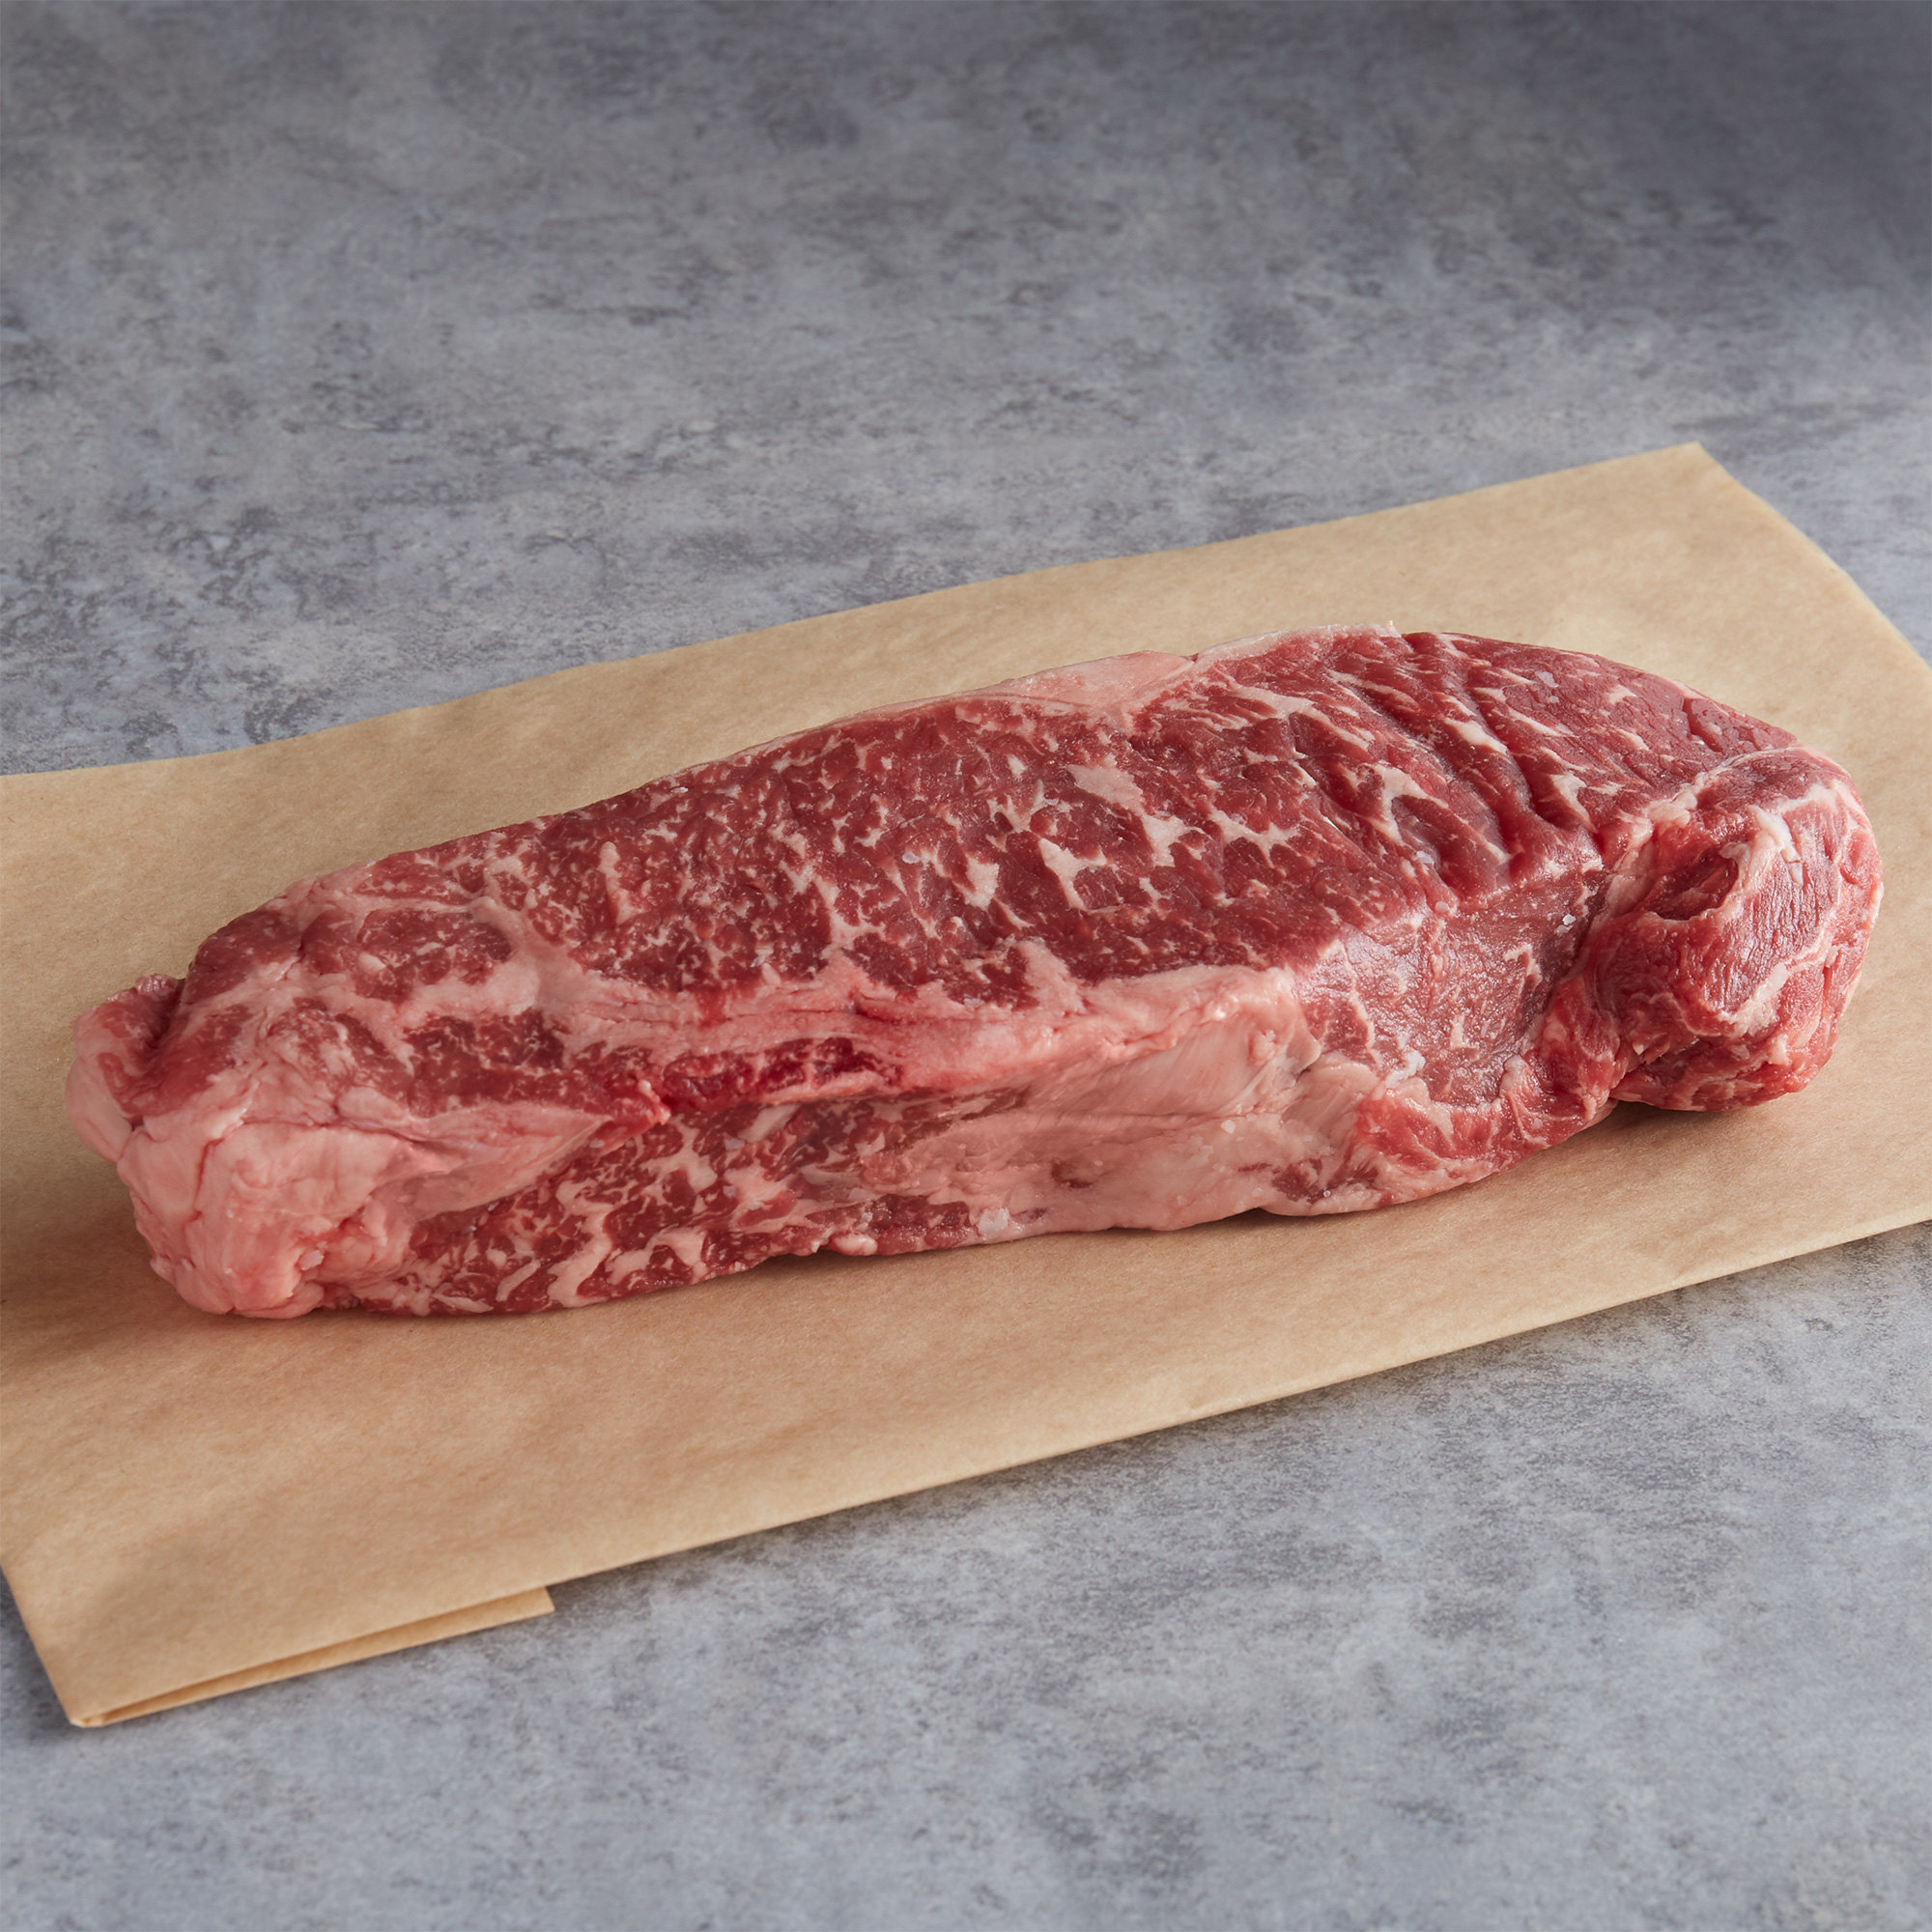 Warrington Farm Meats 12 oz. Frozen New York Strip Steak